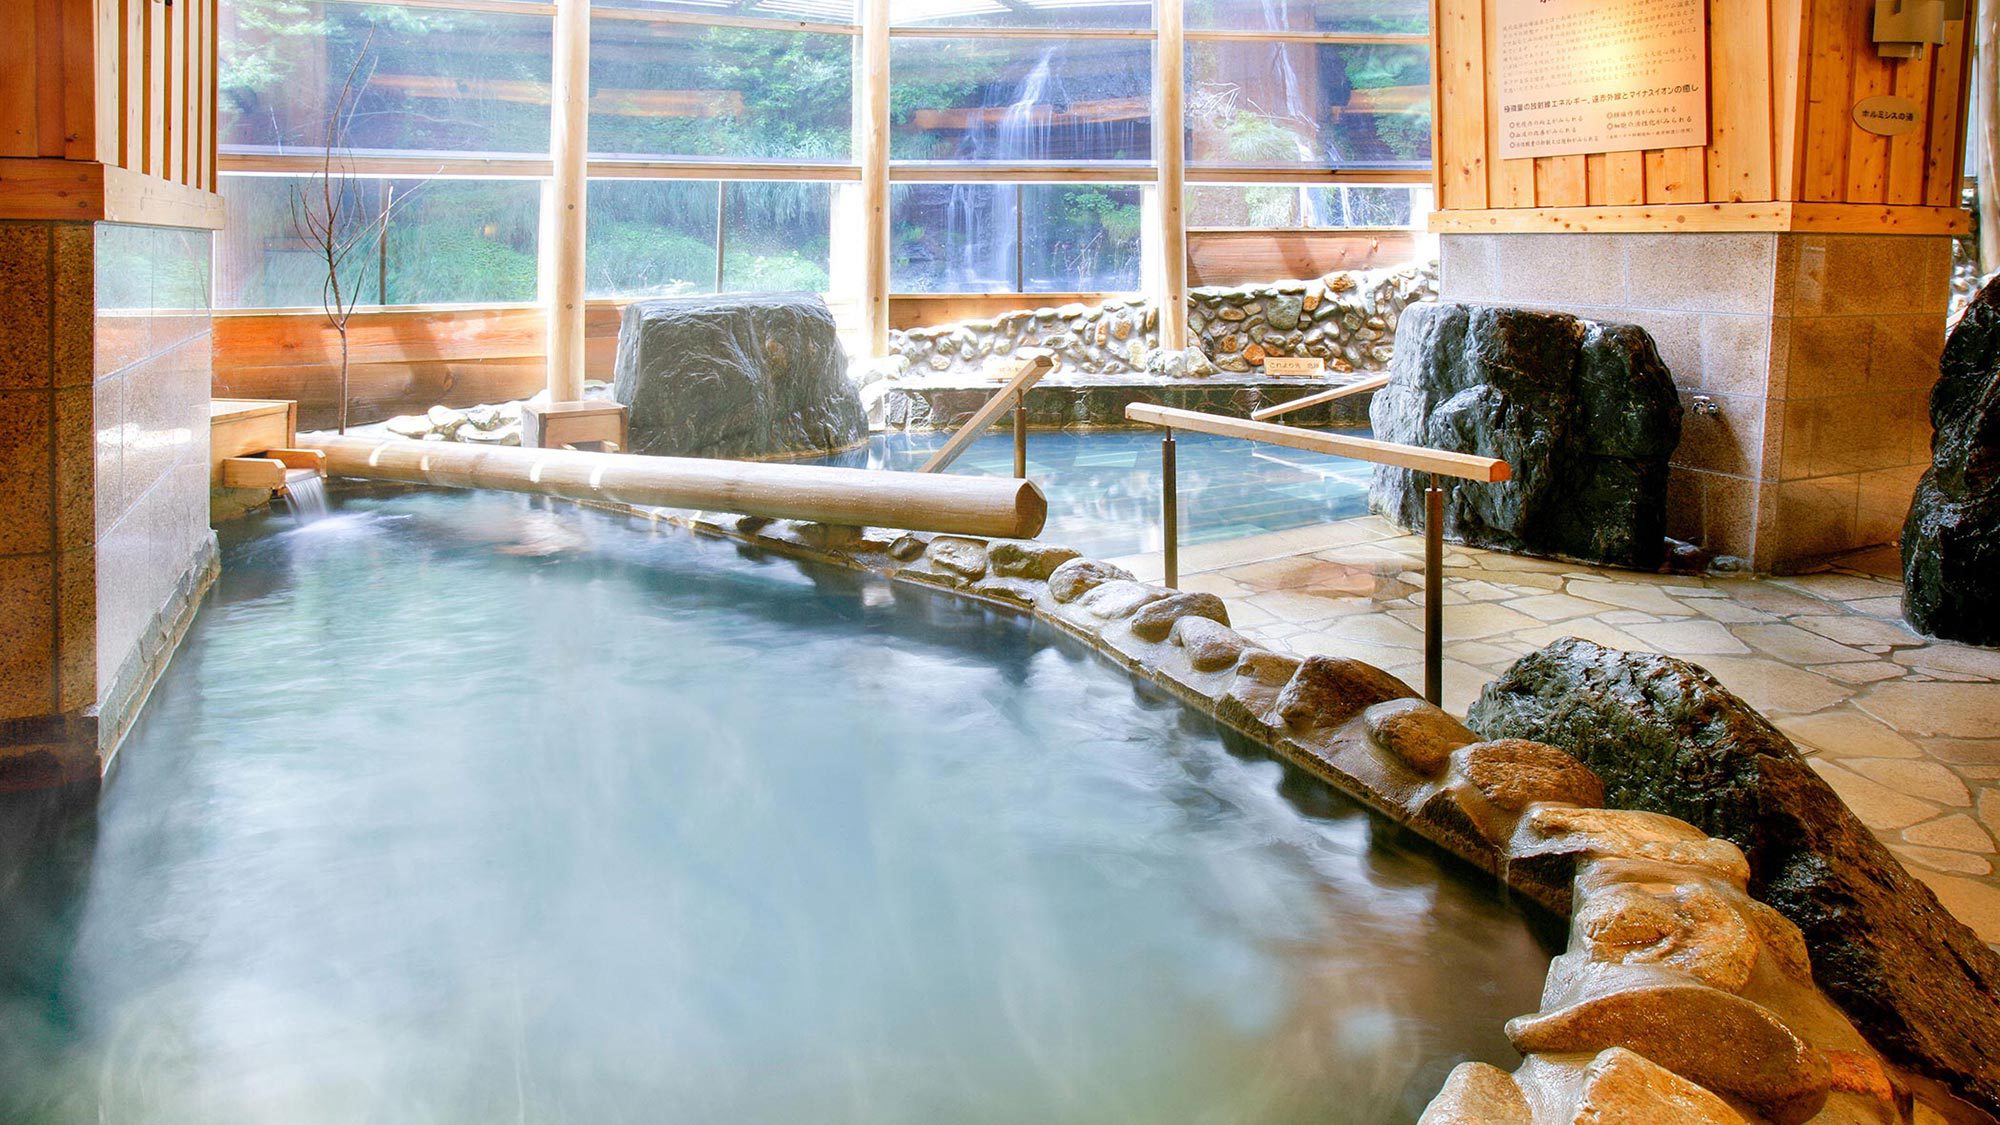 2つの源泉と多彩なお風呂で、館内湯めぐり体験を楽しめます。※加水・一部循環ろ過